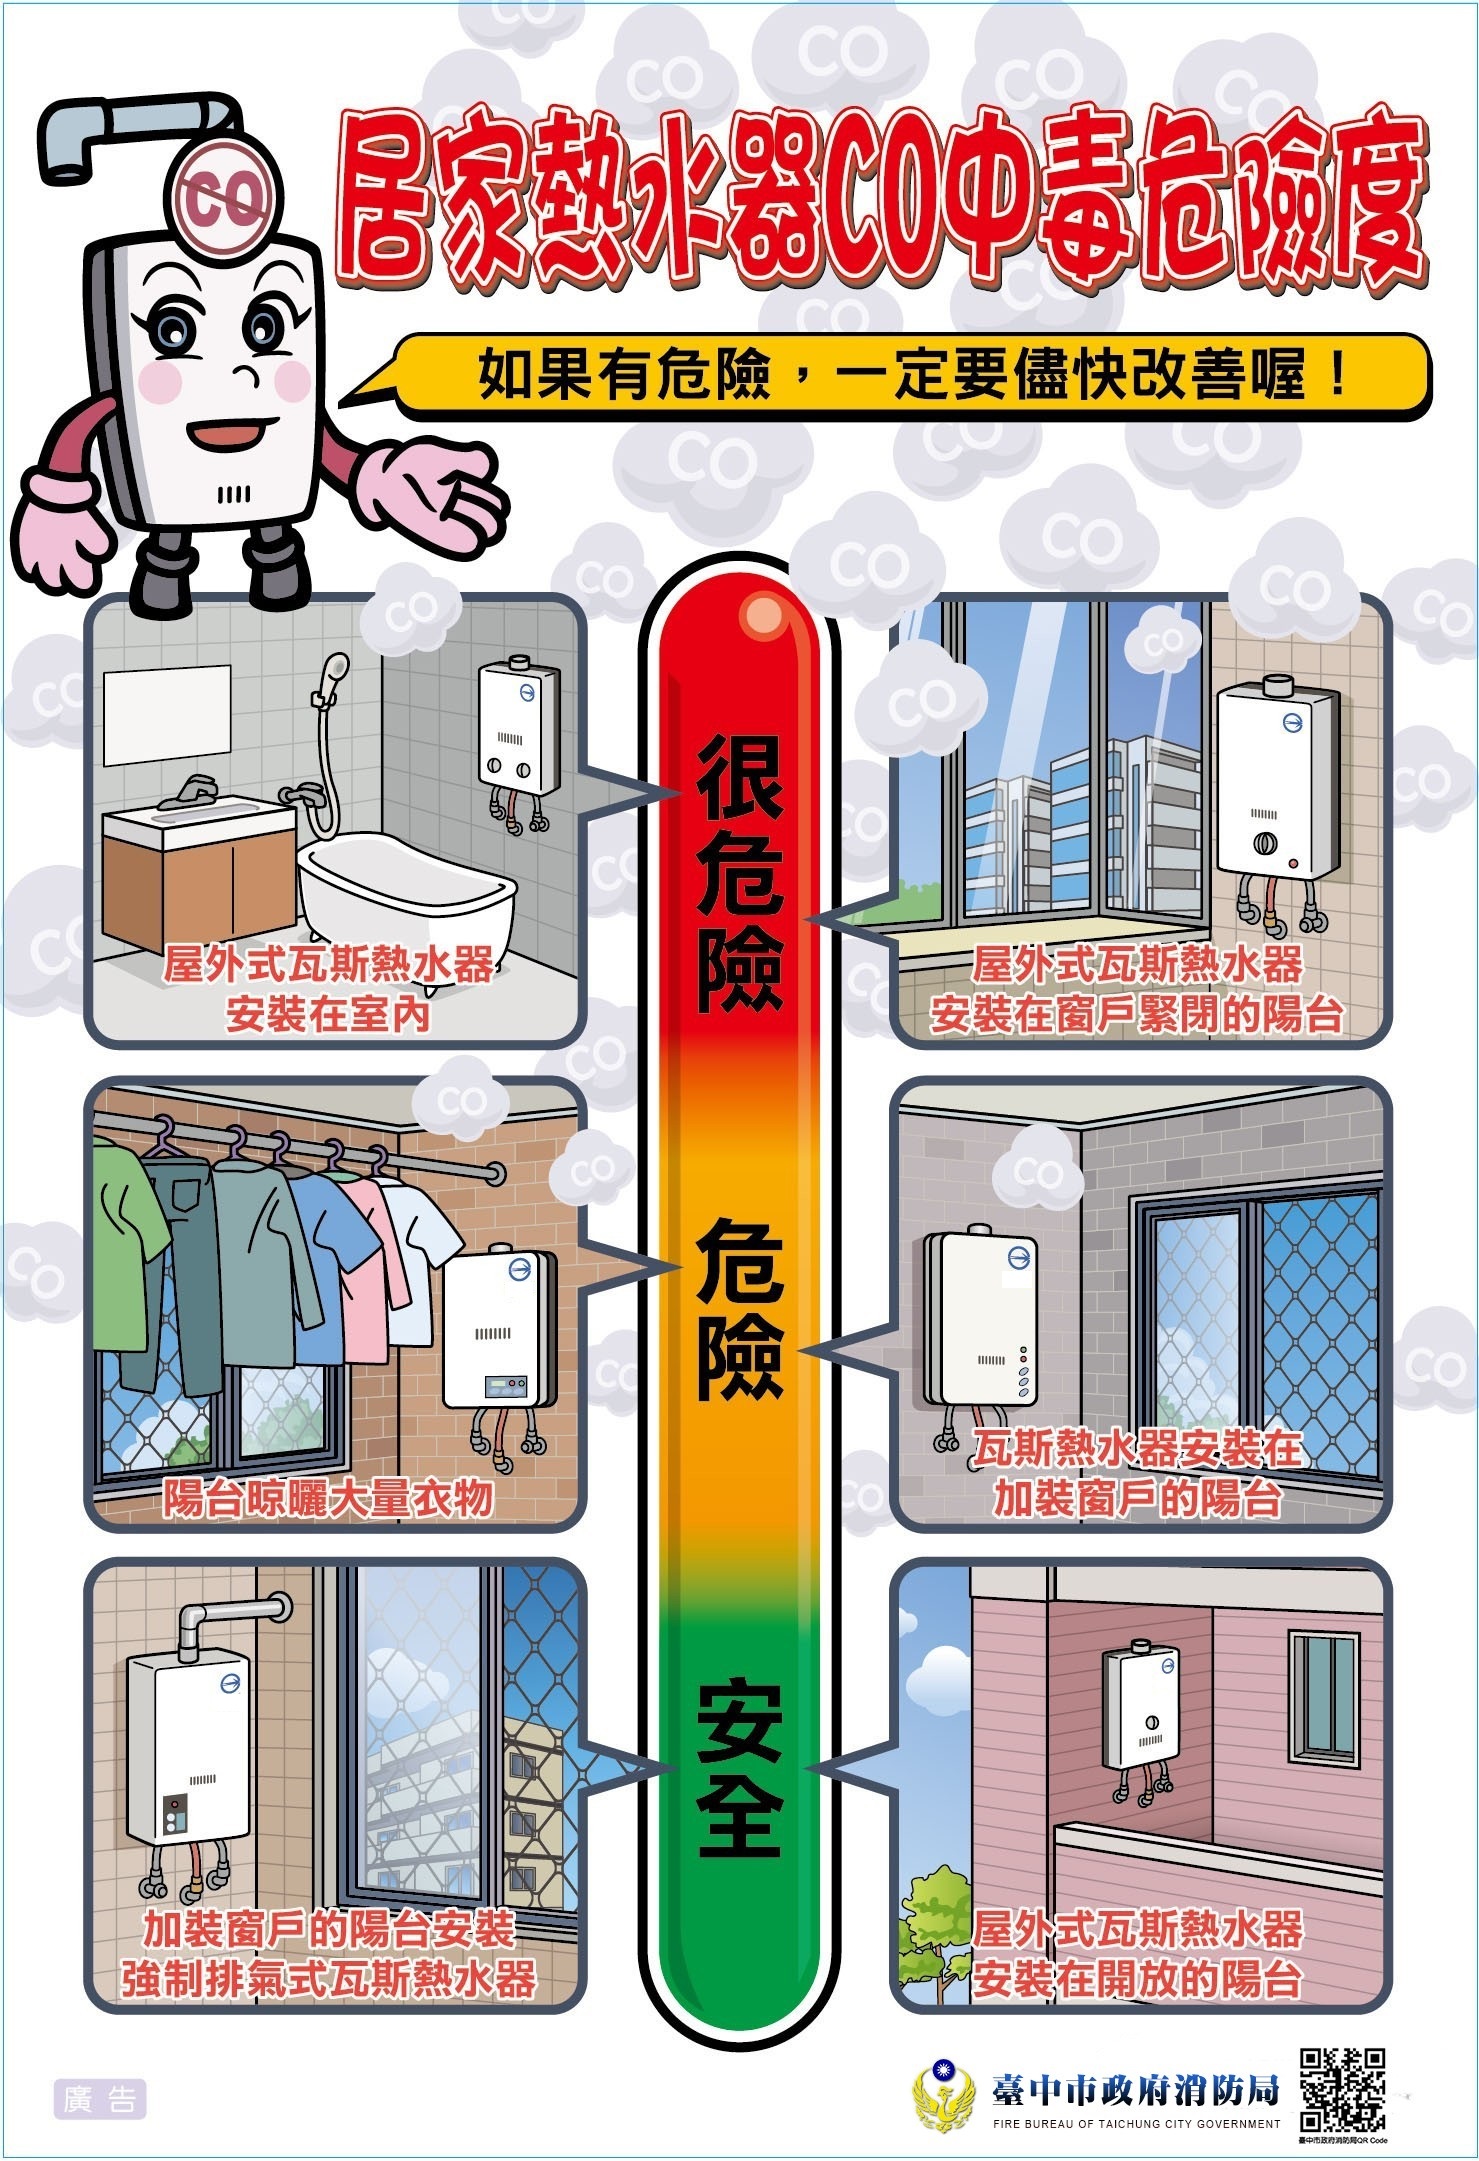 居家熱水器CO中毒危險度